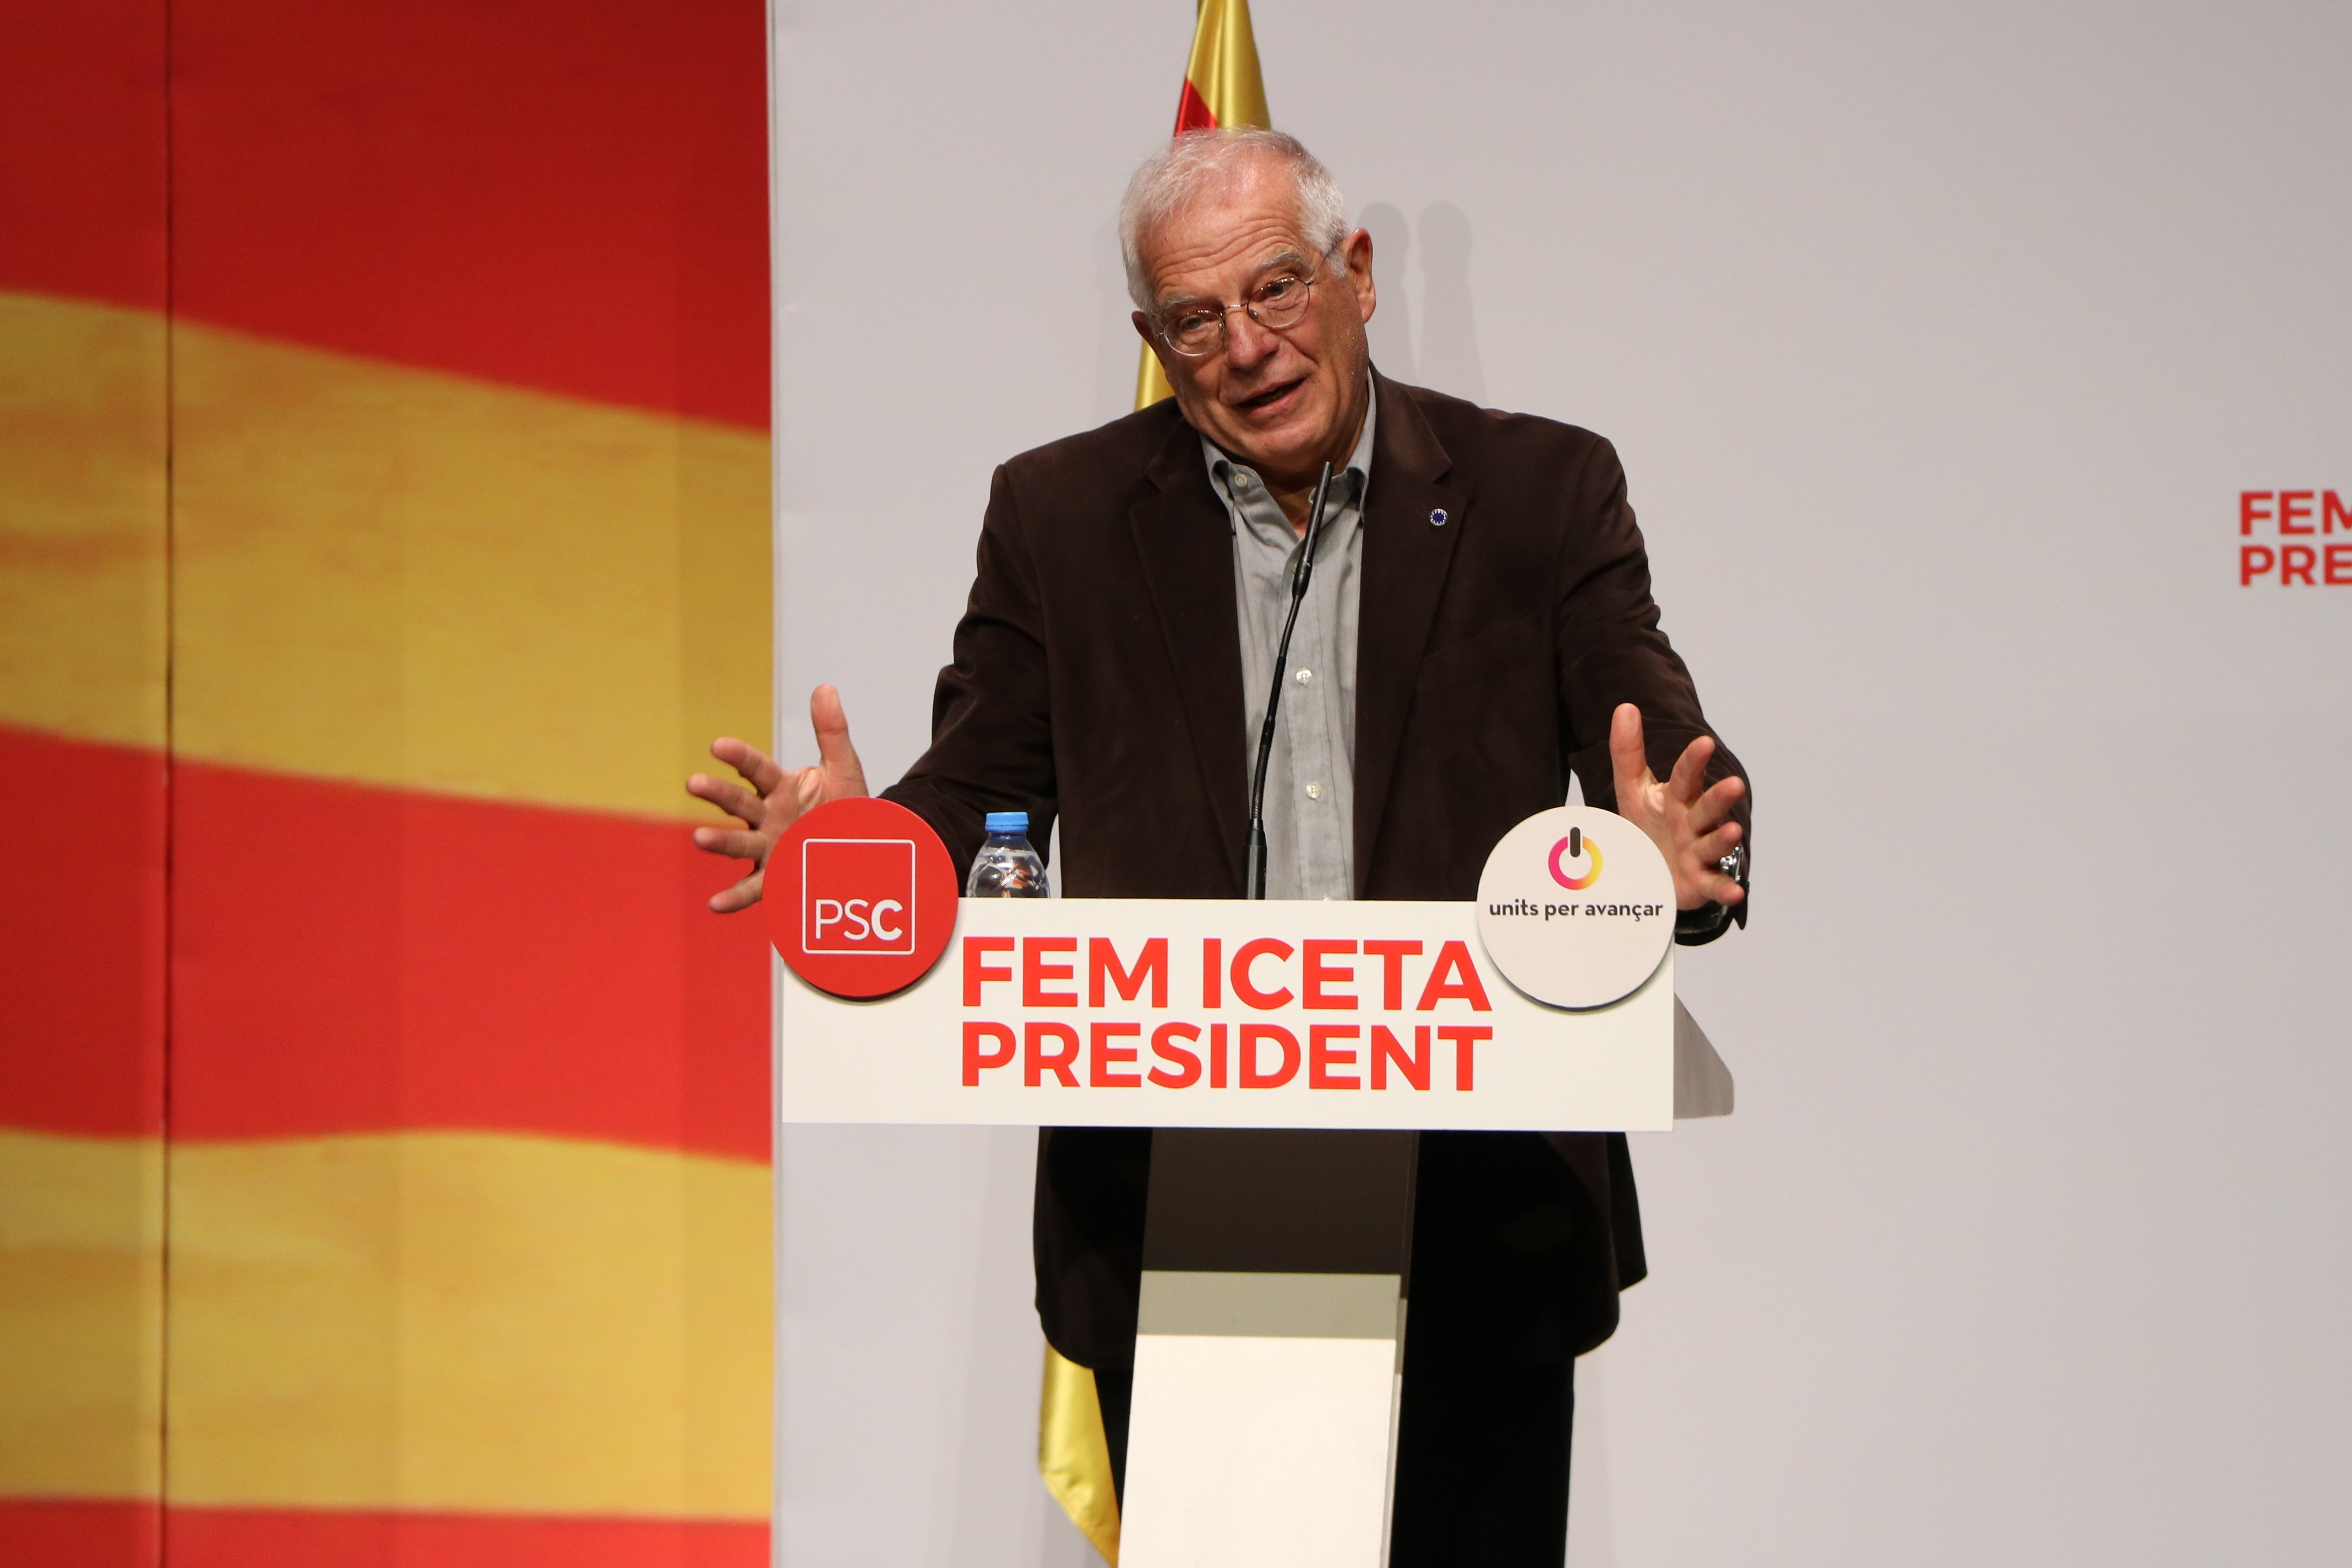 Vídeo: Quan Borrell parlava de desinfectar Catalunya